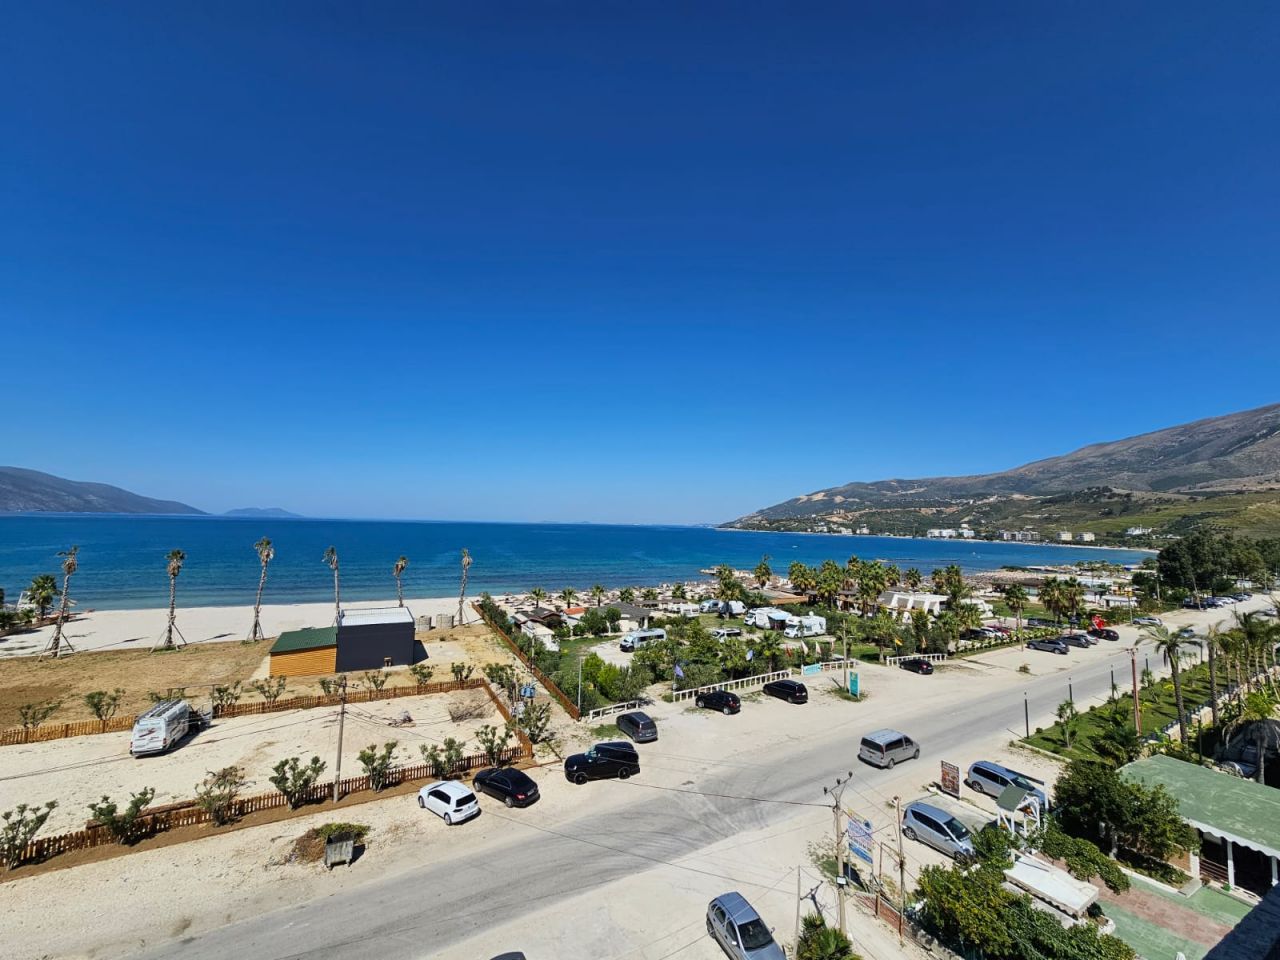 Leilighet Til Salgs I Vlora Albania, Beliggende I Et Panoramaområde, Nær Stranden